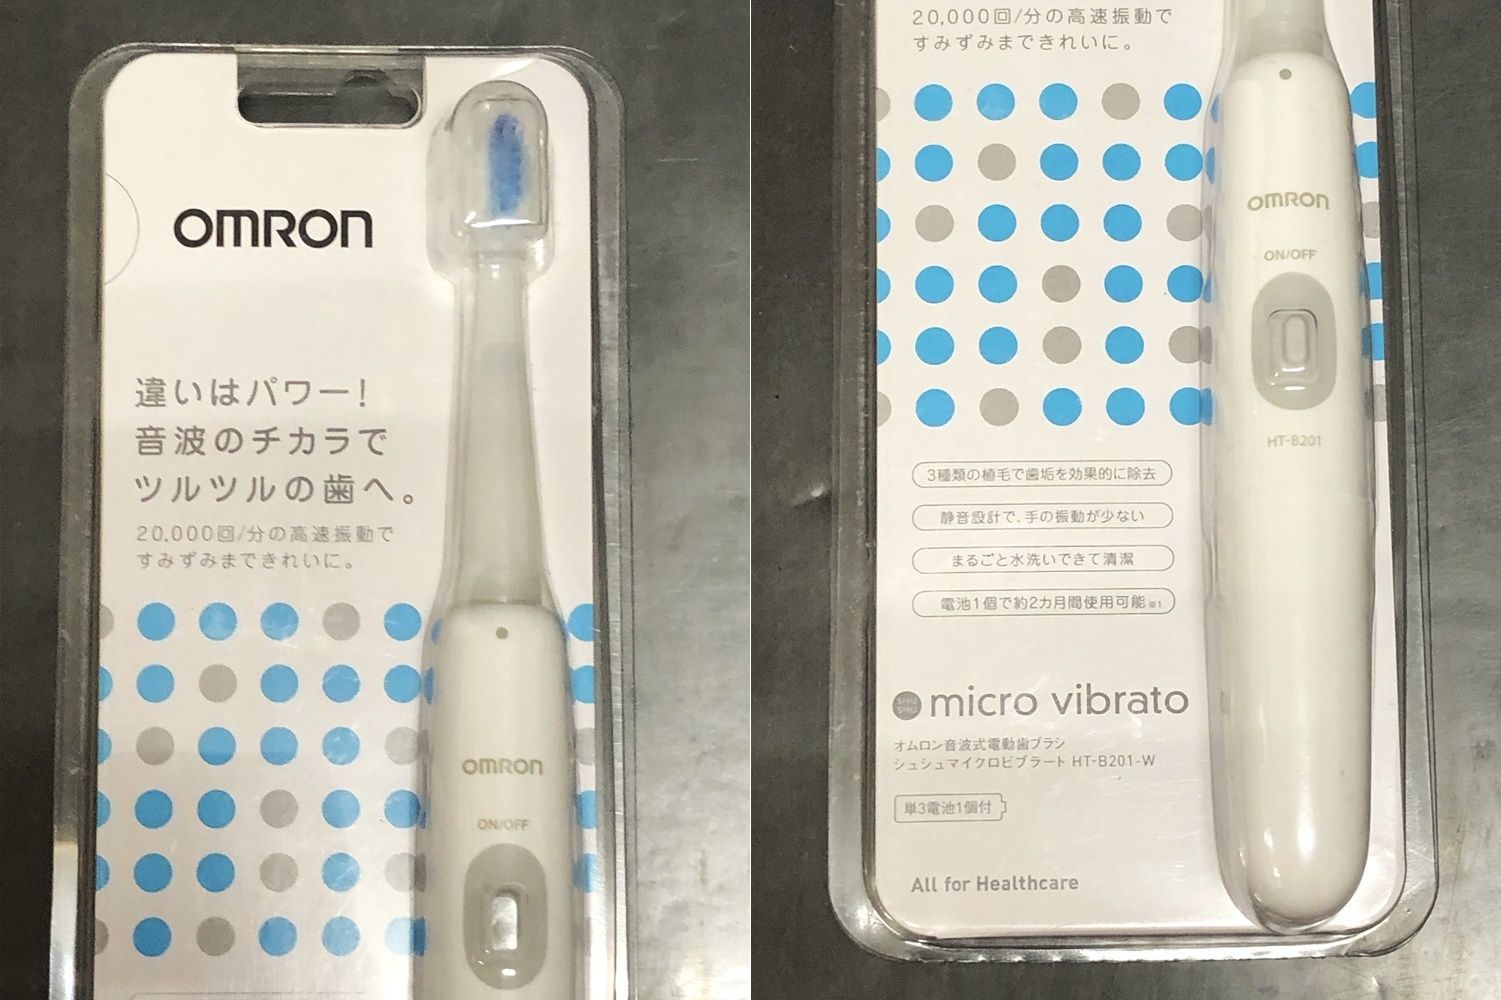 オムロン音波式電動歯ブラシ HT-B201-T73 - 美容/健康